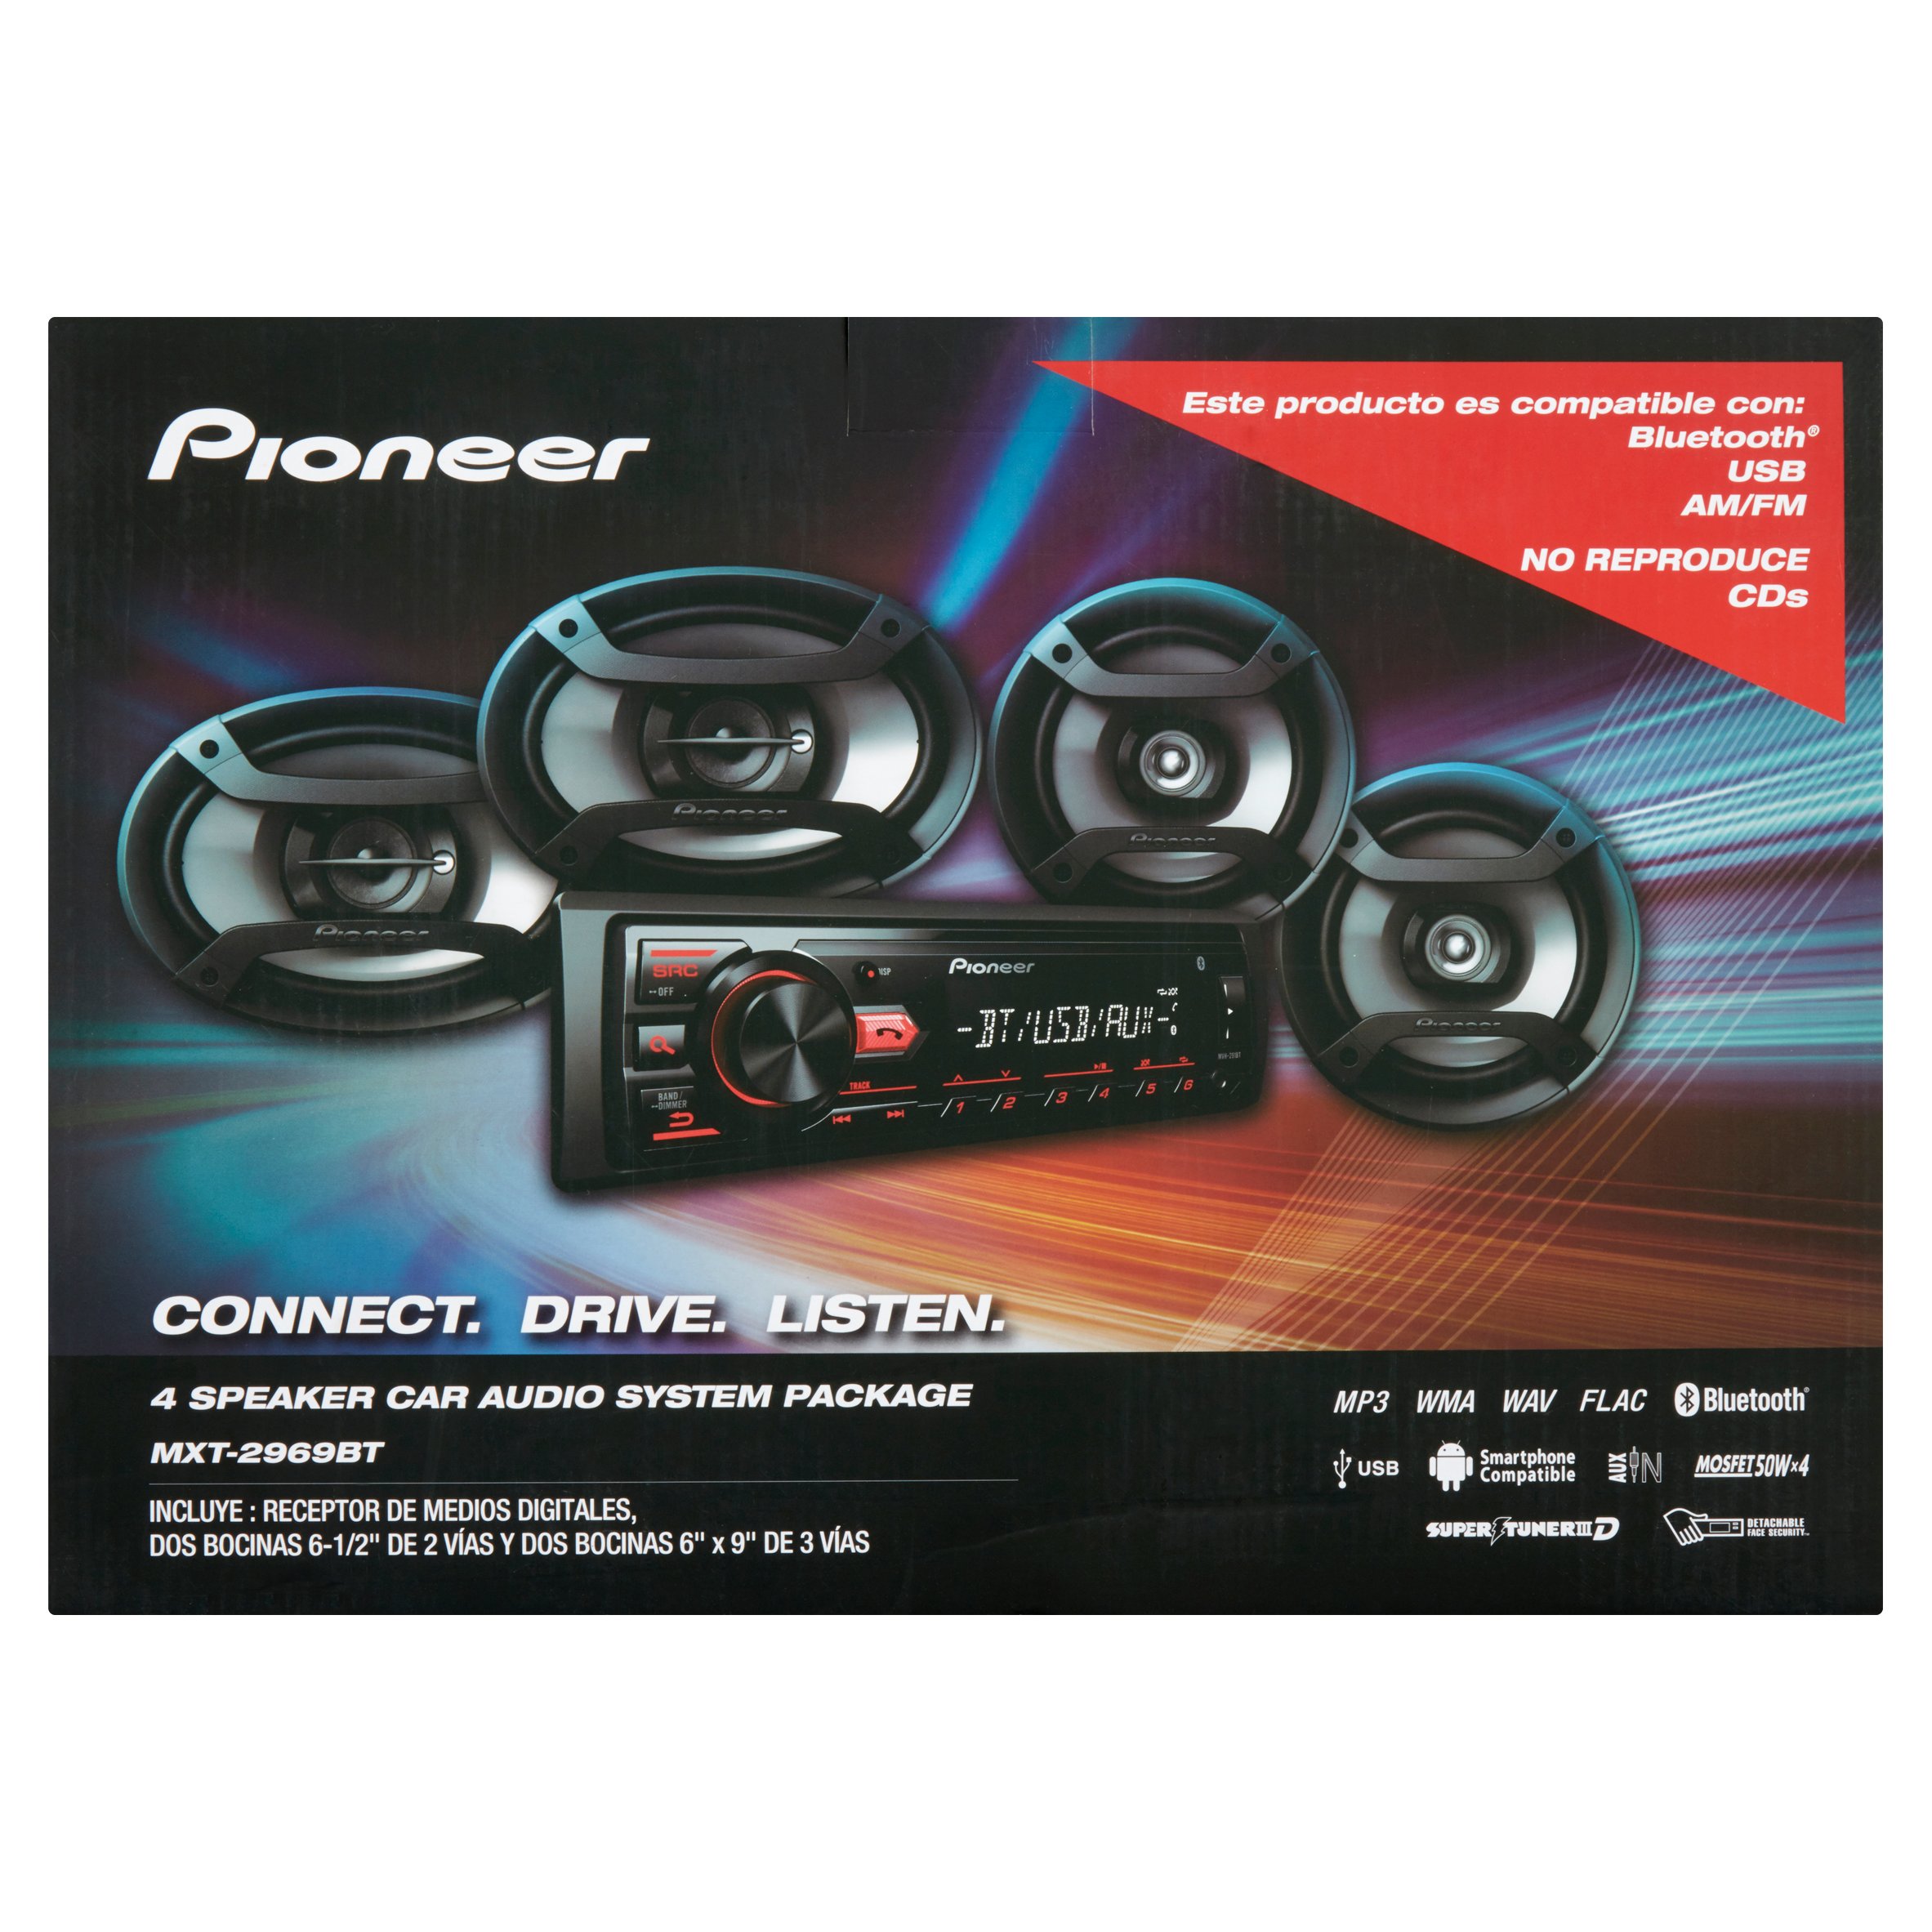 Pioneer 4 Speaker Car Audio System Package - image 2 of 5